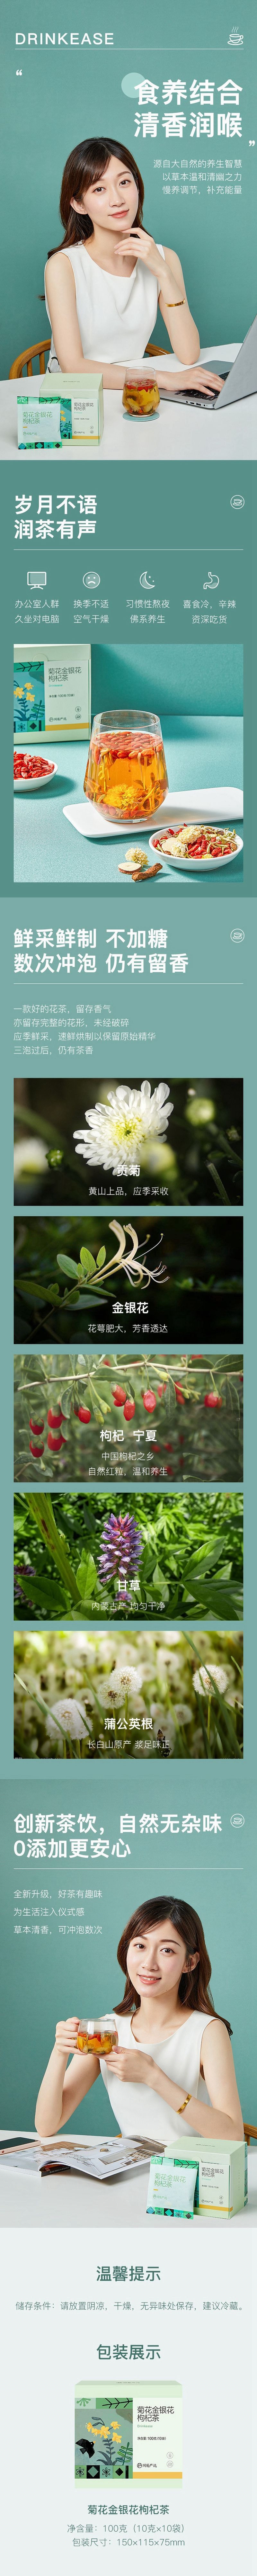 YANXUAN Chrysanthemum medlar tea 100g